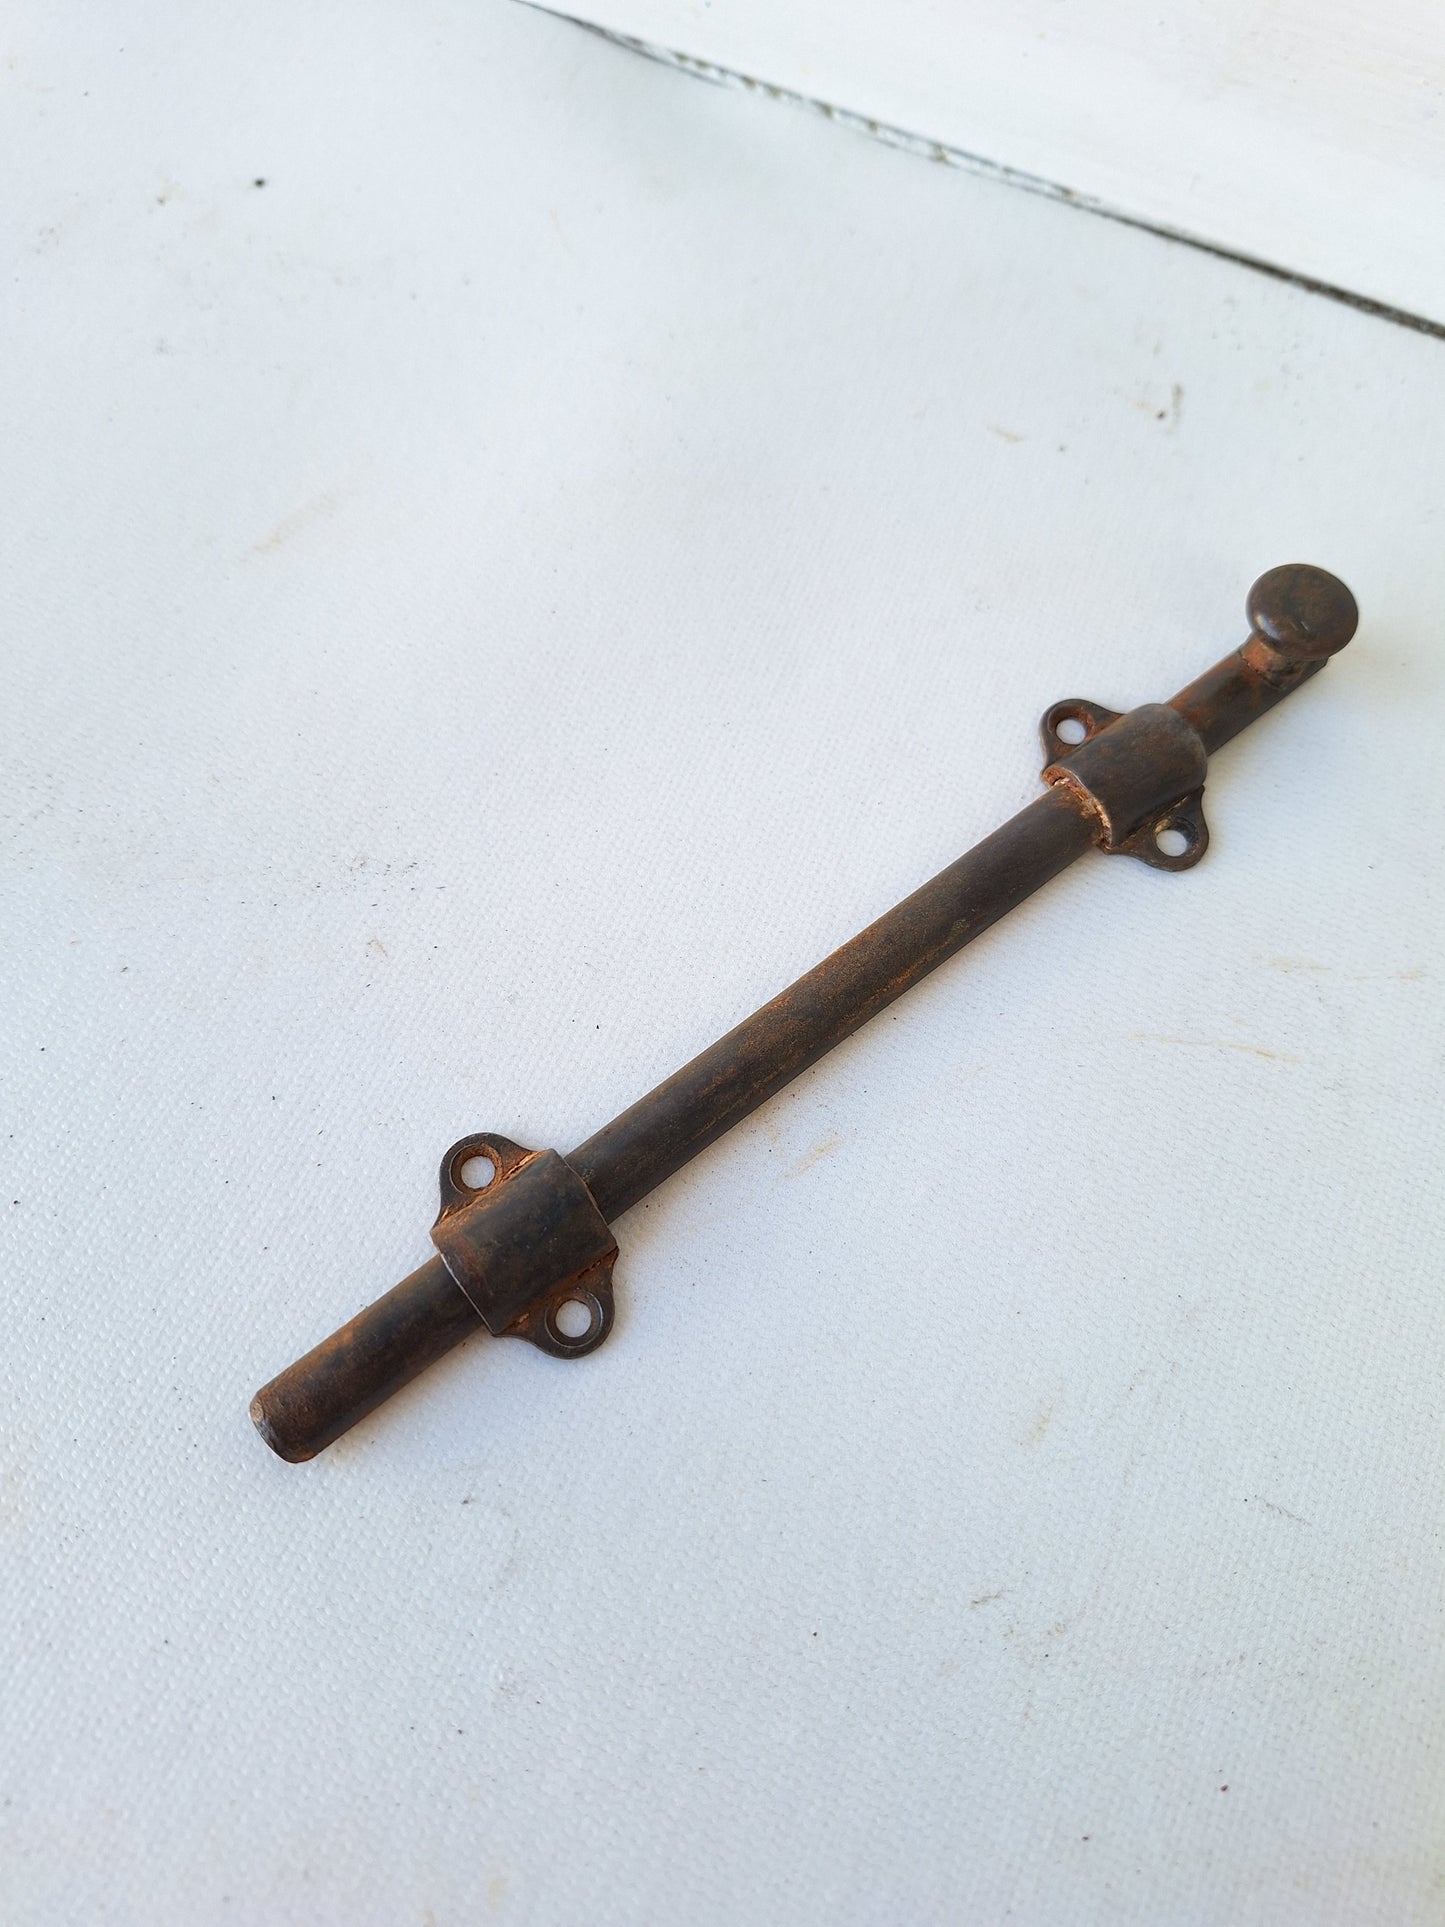 Small Antique French Door Slide Bolt, Iron Slide Bolt Locks for Double Doors 040908